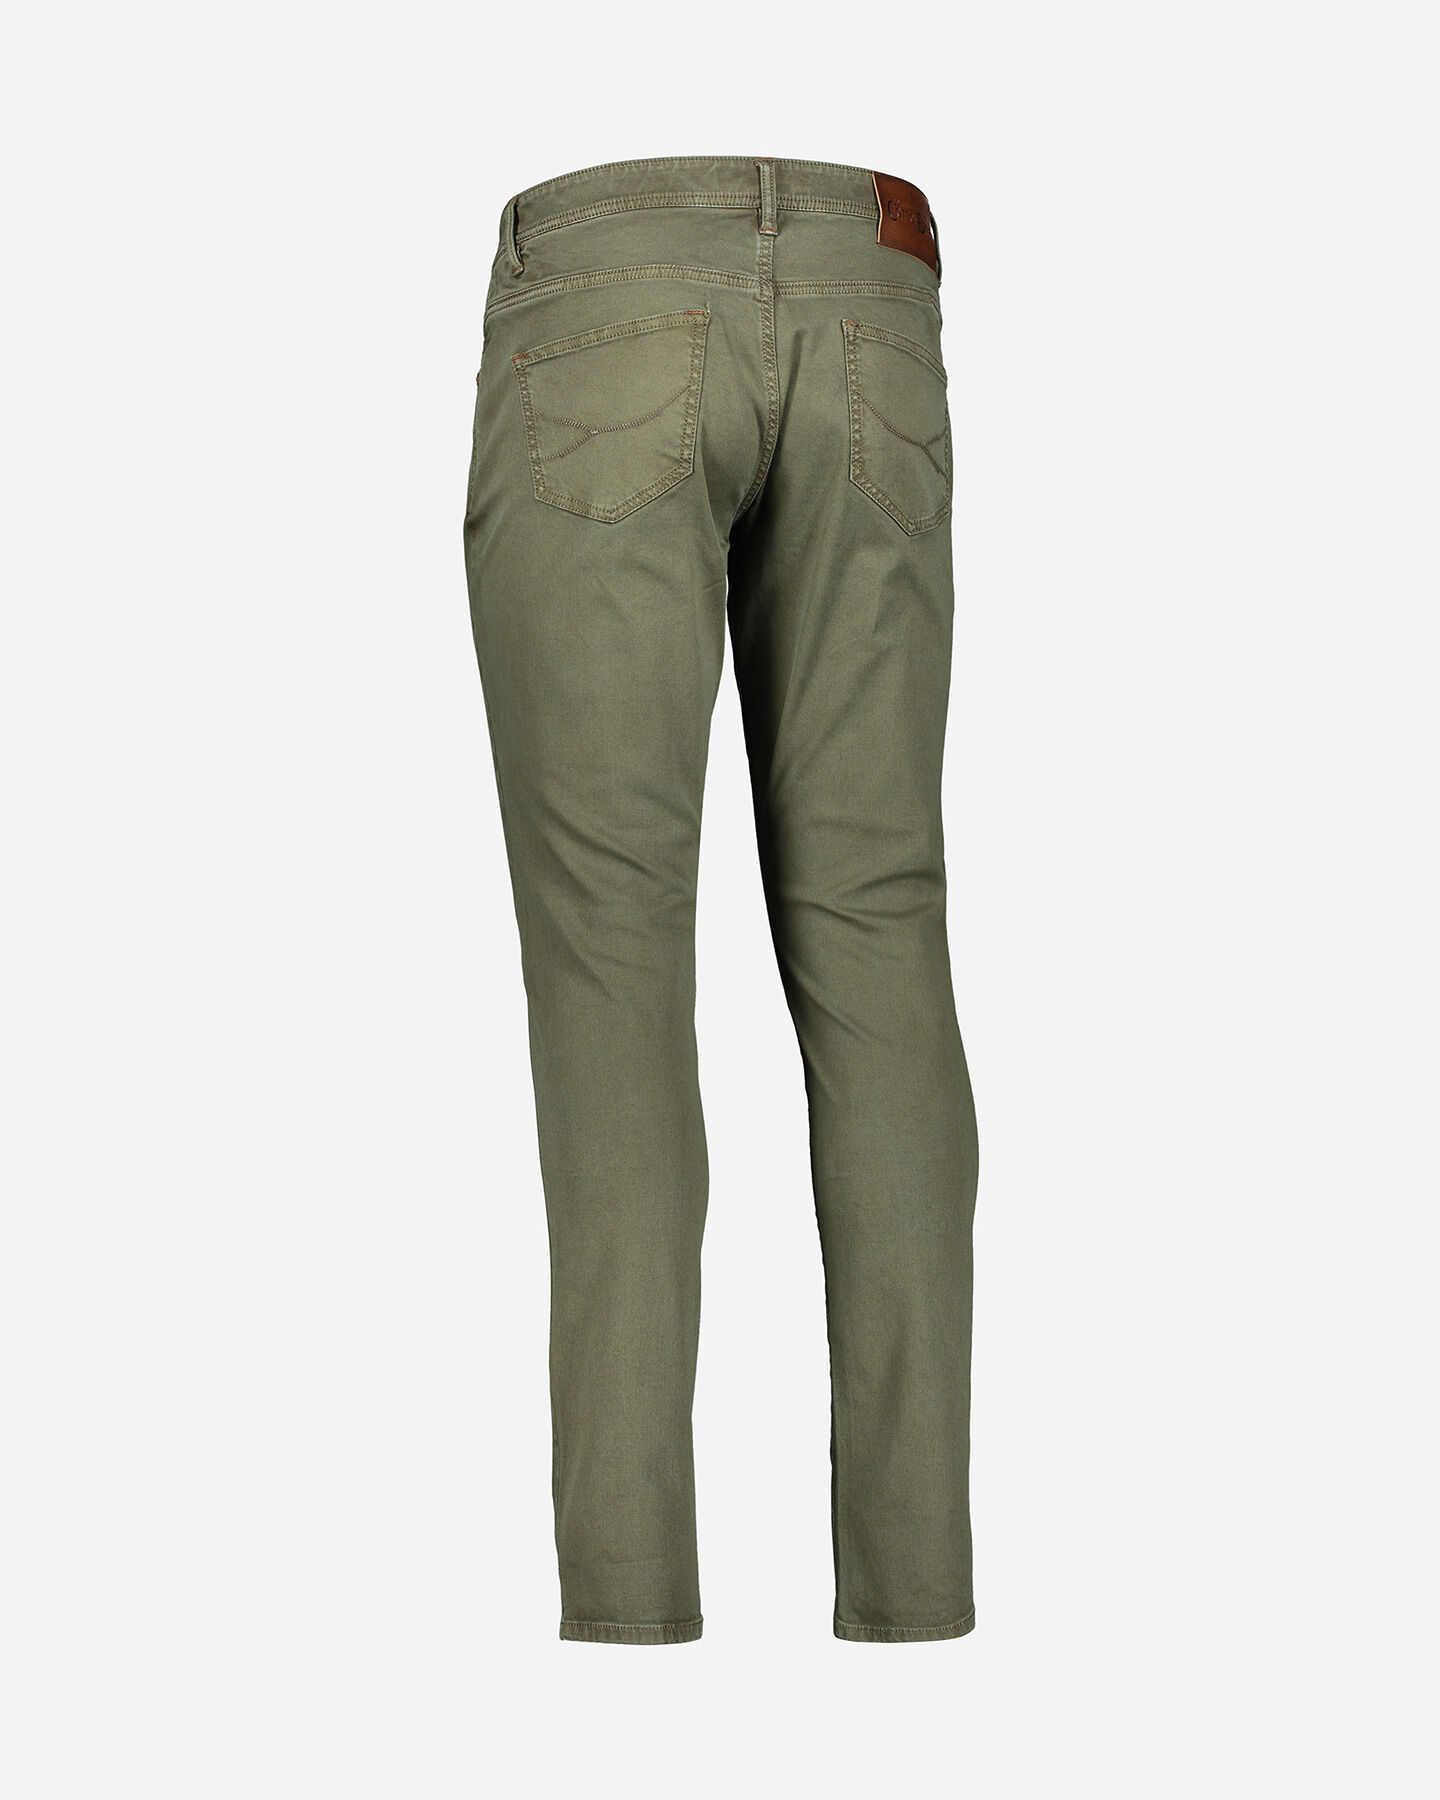  Pantalone COTTON BELT 5T HAMILTON SLIM M S4095903|845|36 scatto 2